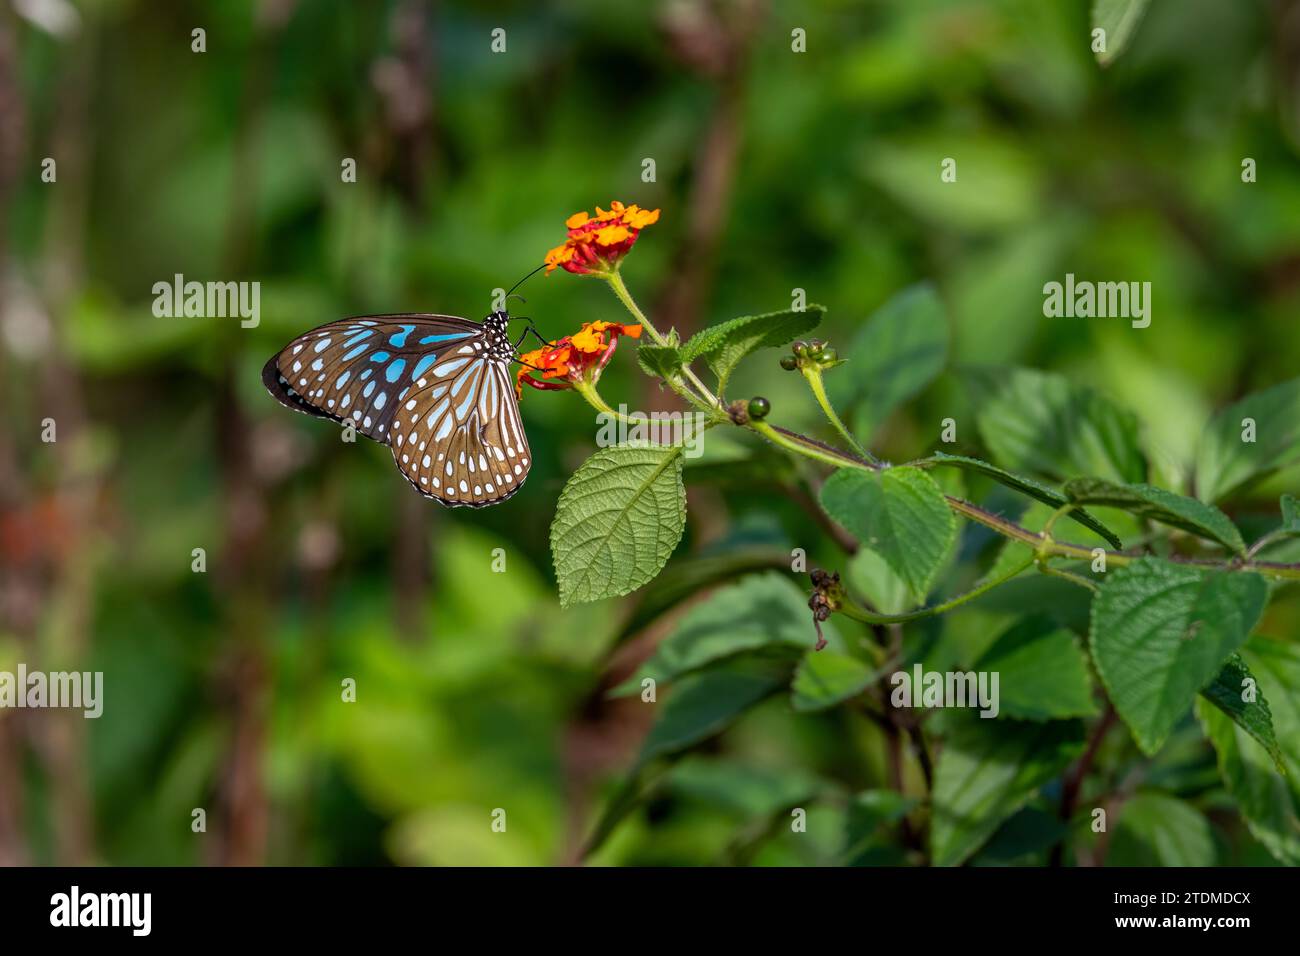 Erleben Sie das Wesen von Keralas atemberaubender Wildnis: Blaue Tiger-Schmetterlinge und Lantana-Blüten in Gavis Eco Paradise. Stockfoto